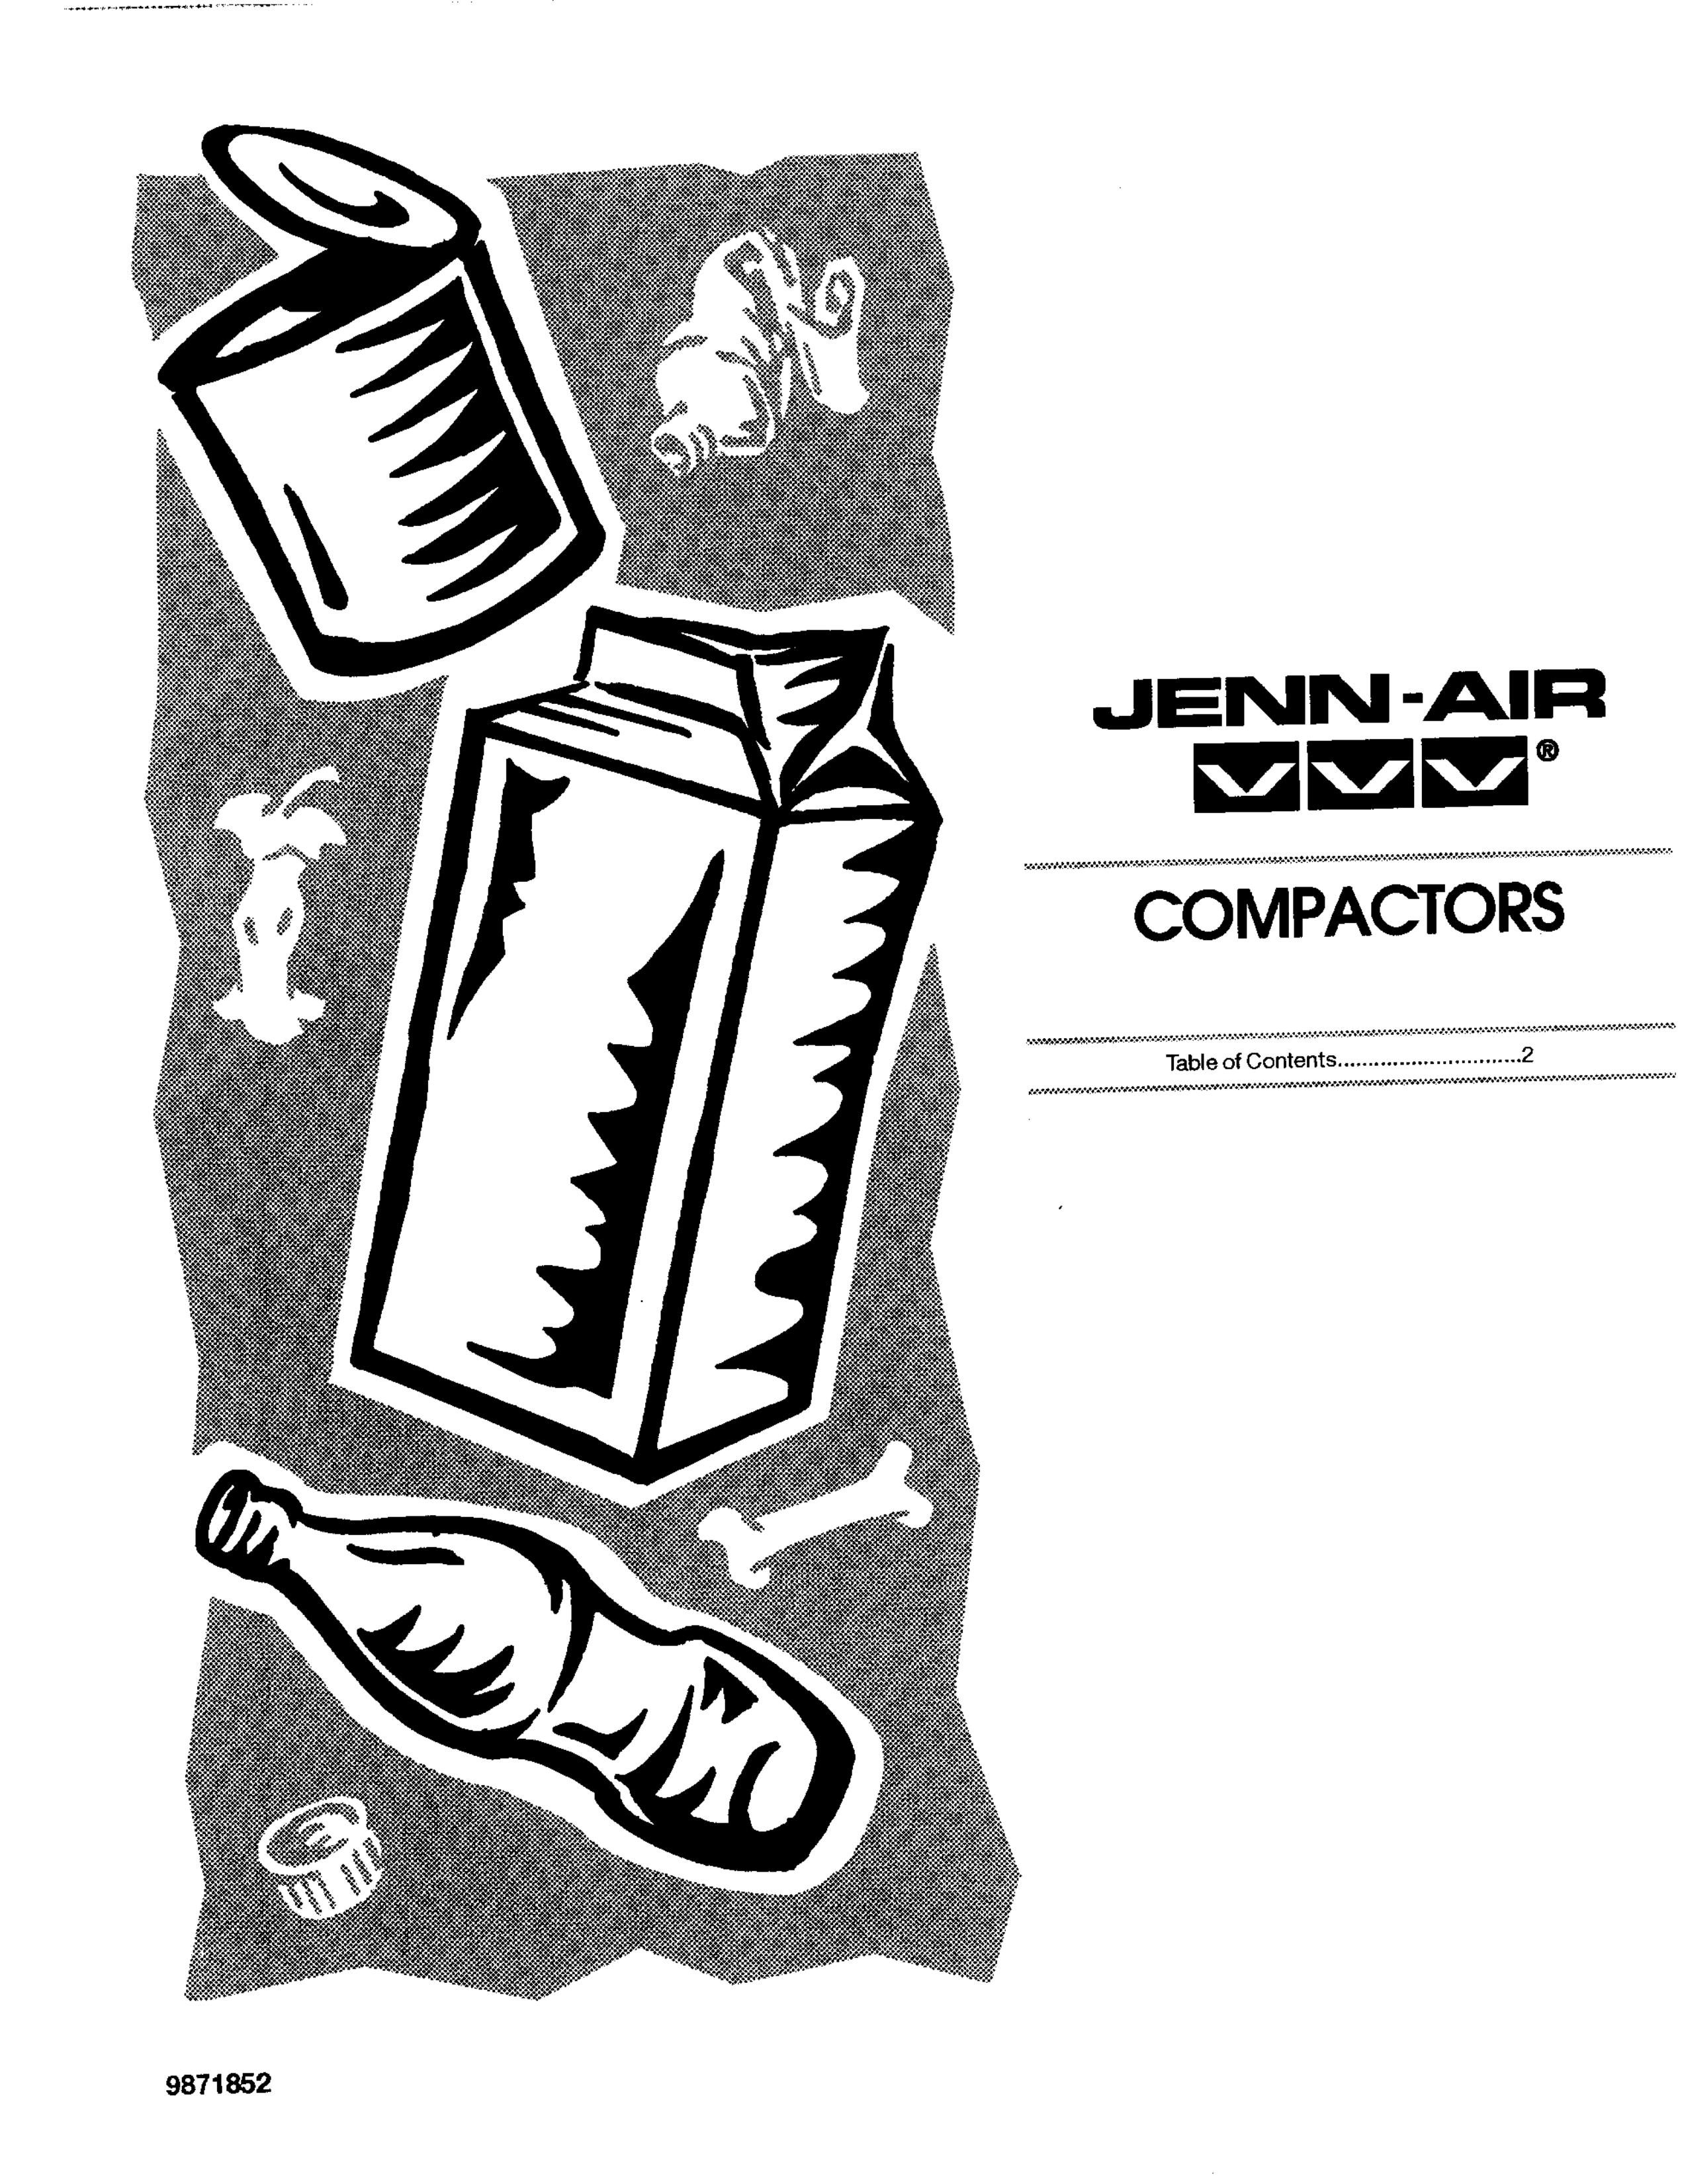 Jenn-Air VVV COMPACTORS Trash Compactor User Manual